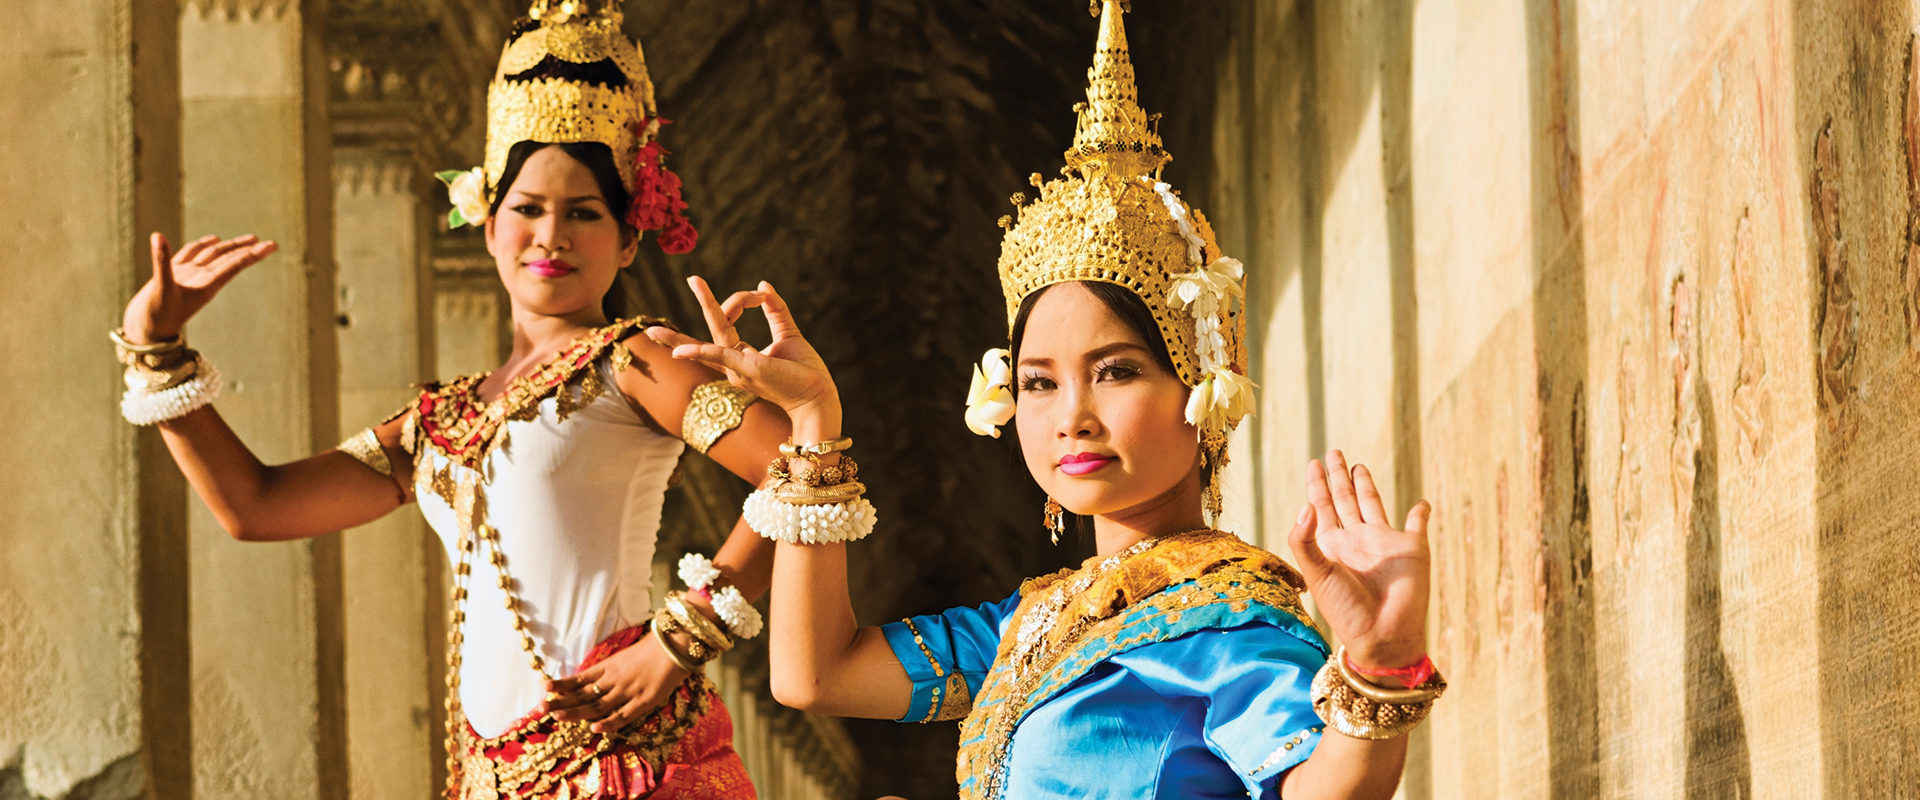 Aspara dancers performing in Angkor Wat, Cambodia